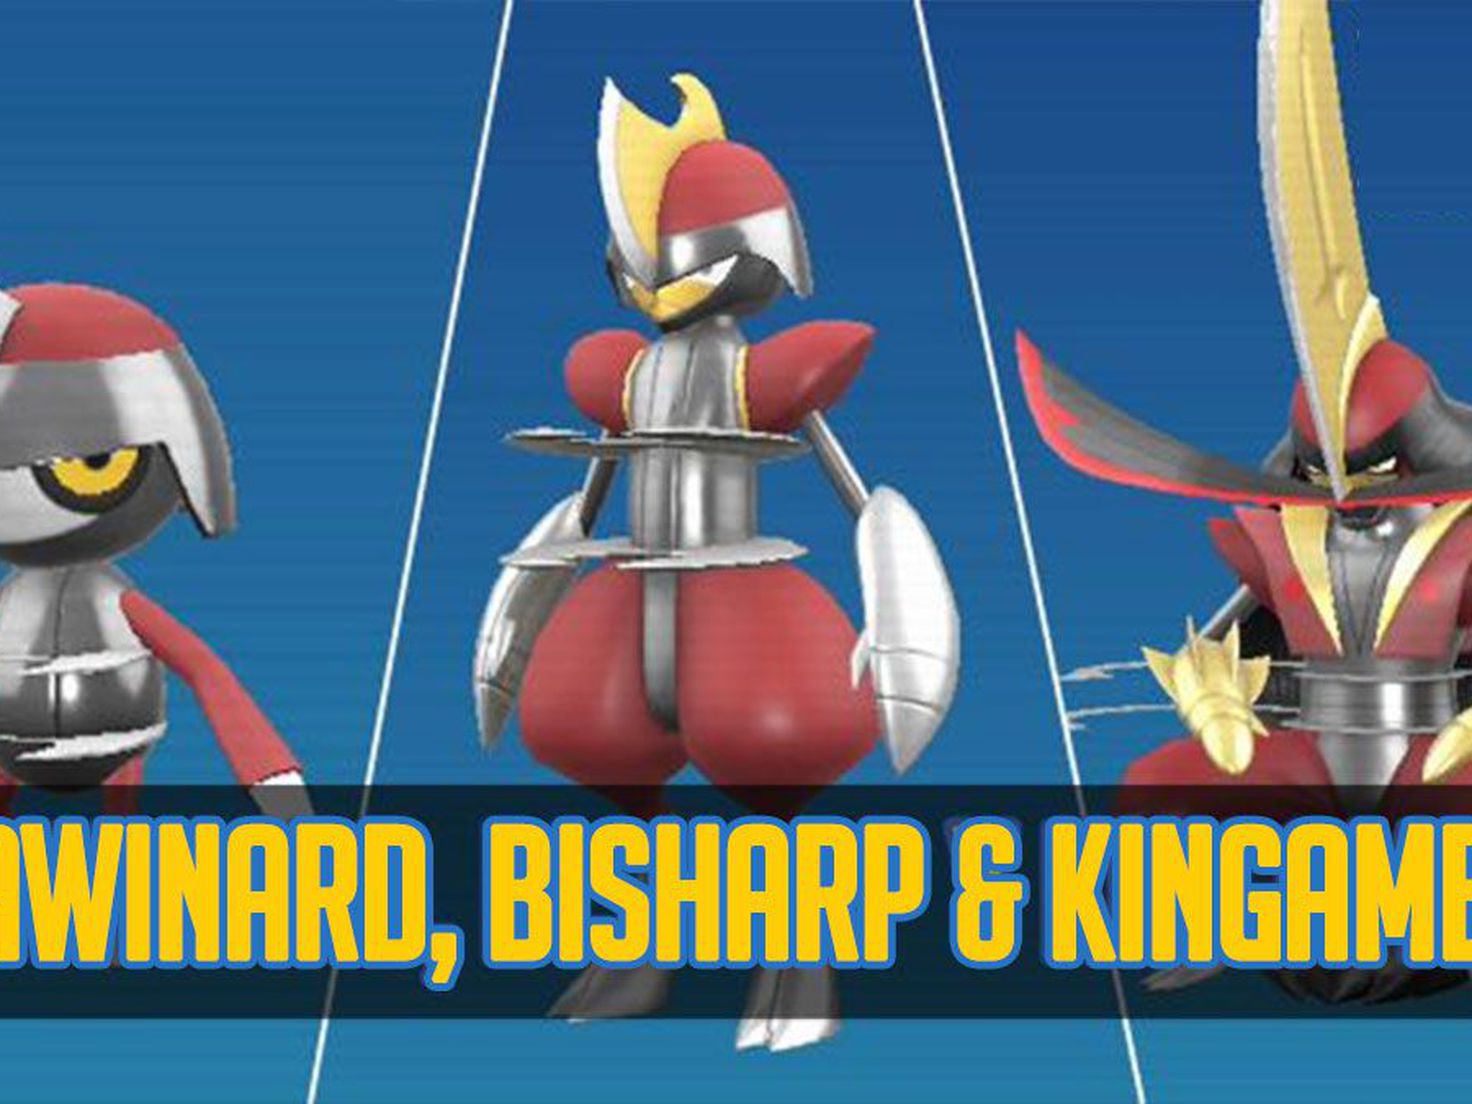 Pokémon - Bisharp